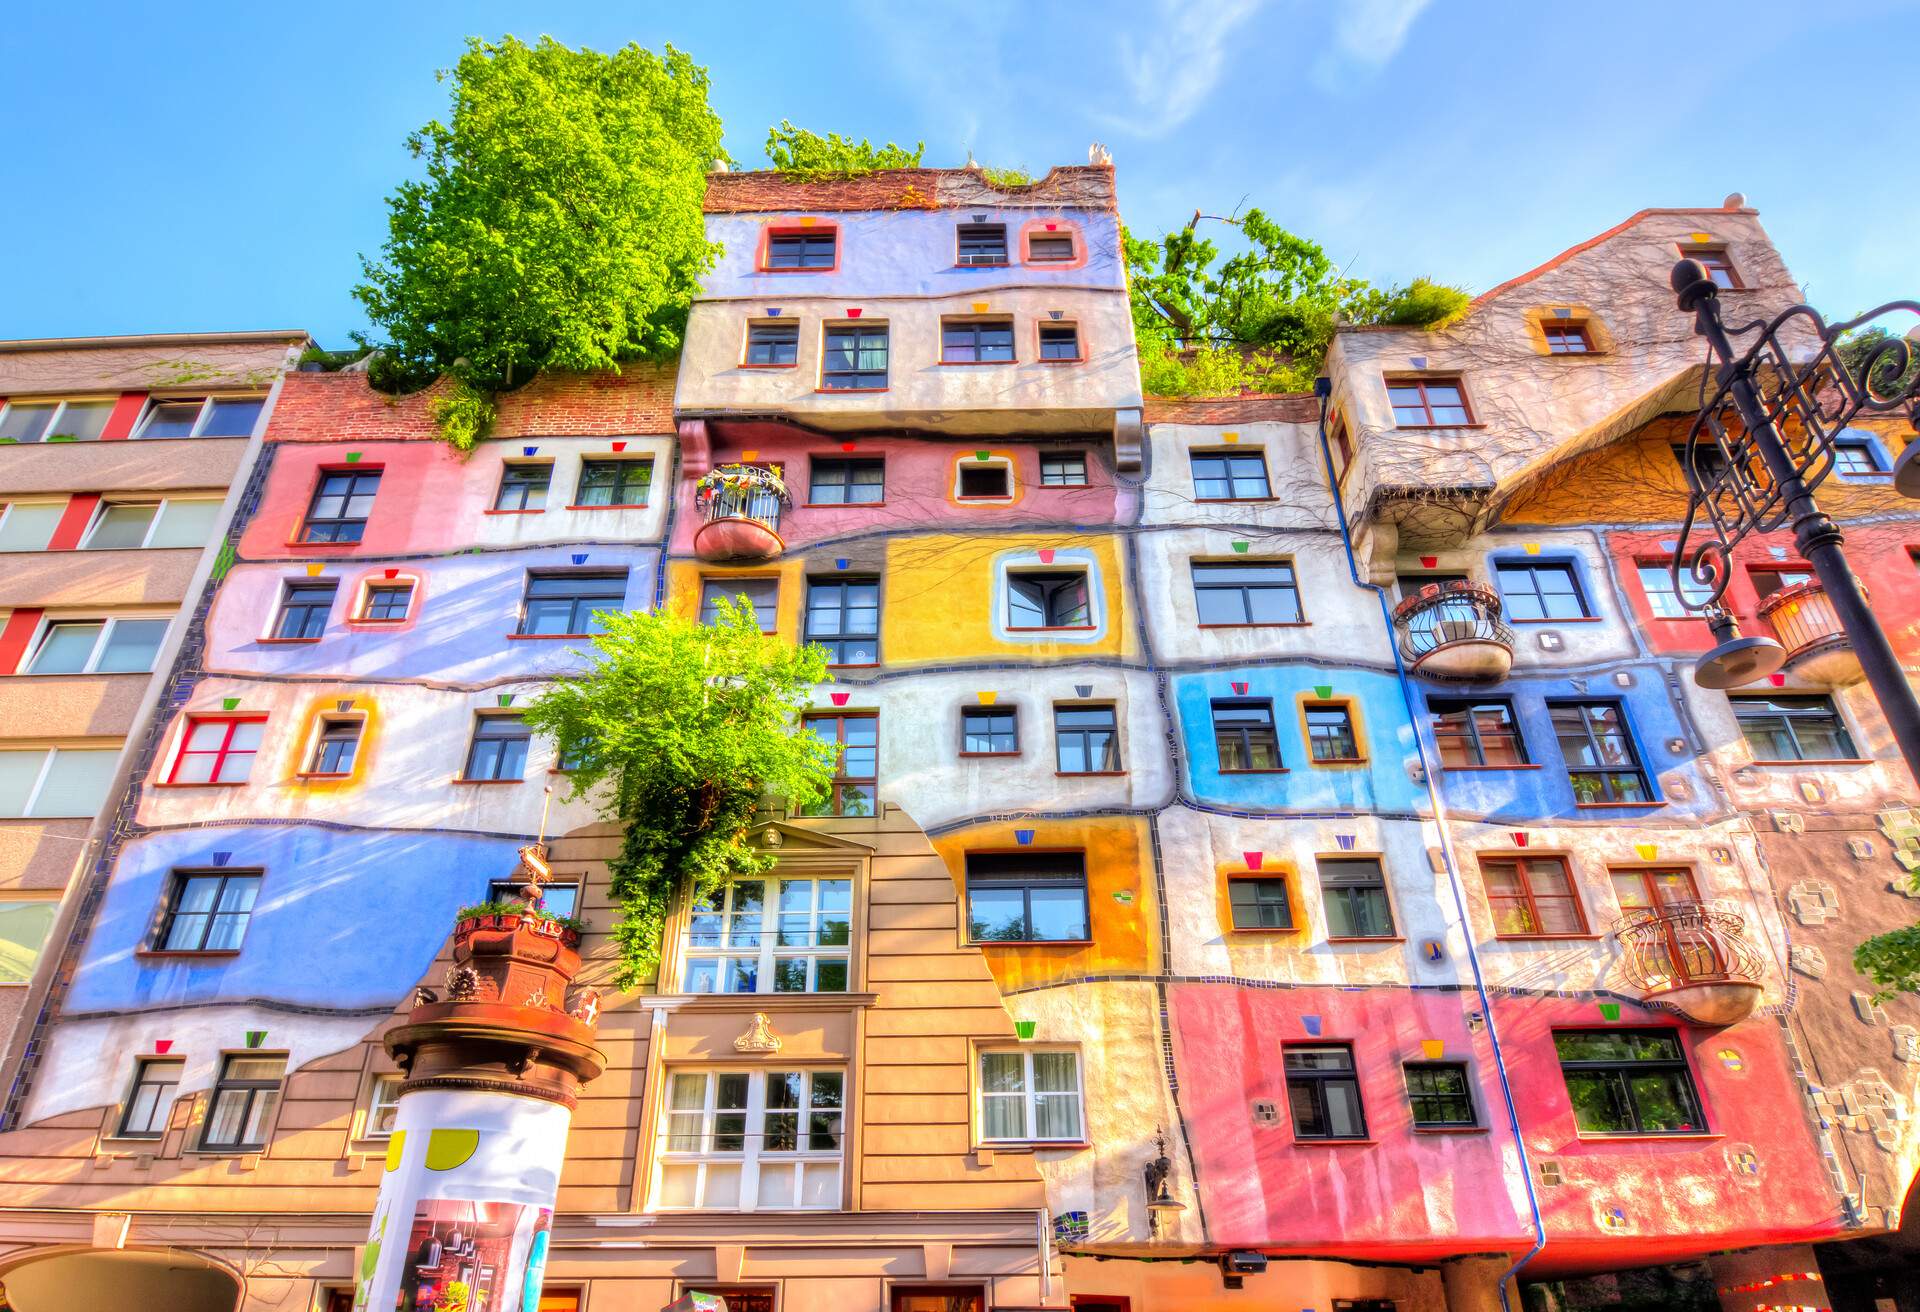 AUSTRIA_VIENNA_Hundertwasser-House